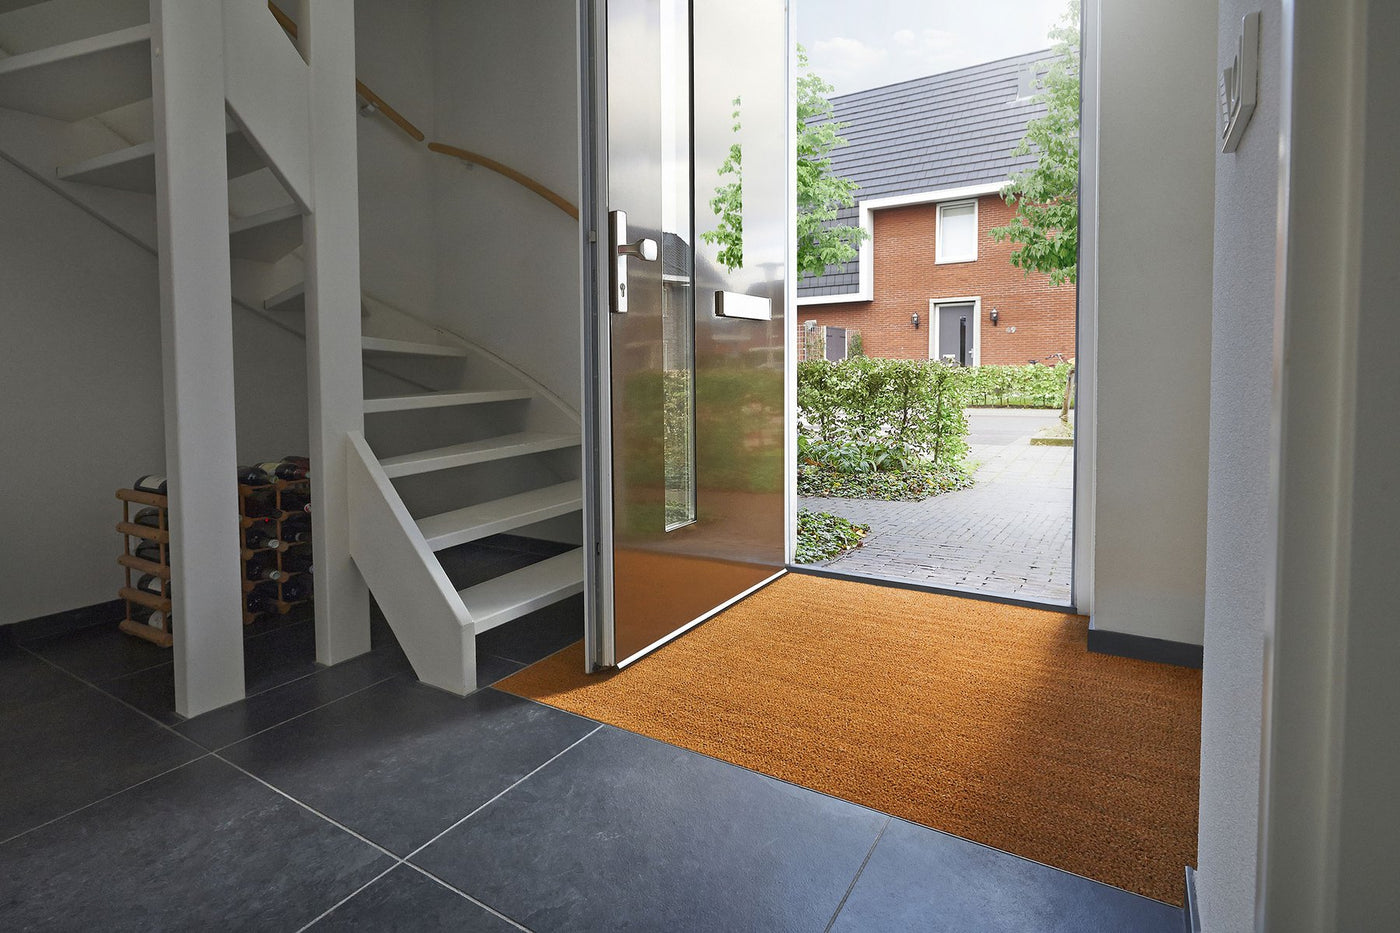 A Modern Door Mat for an Elegant Home – Coco Mats N More